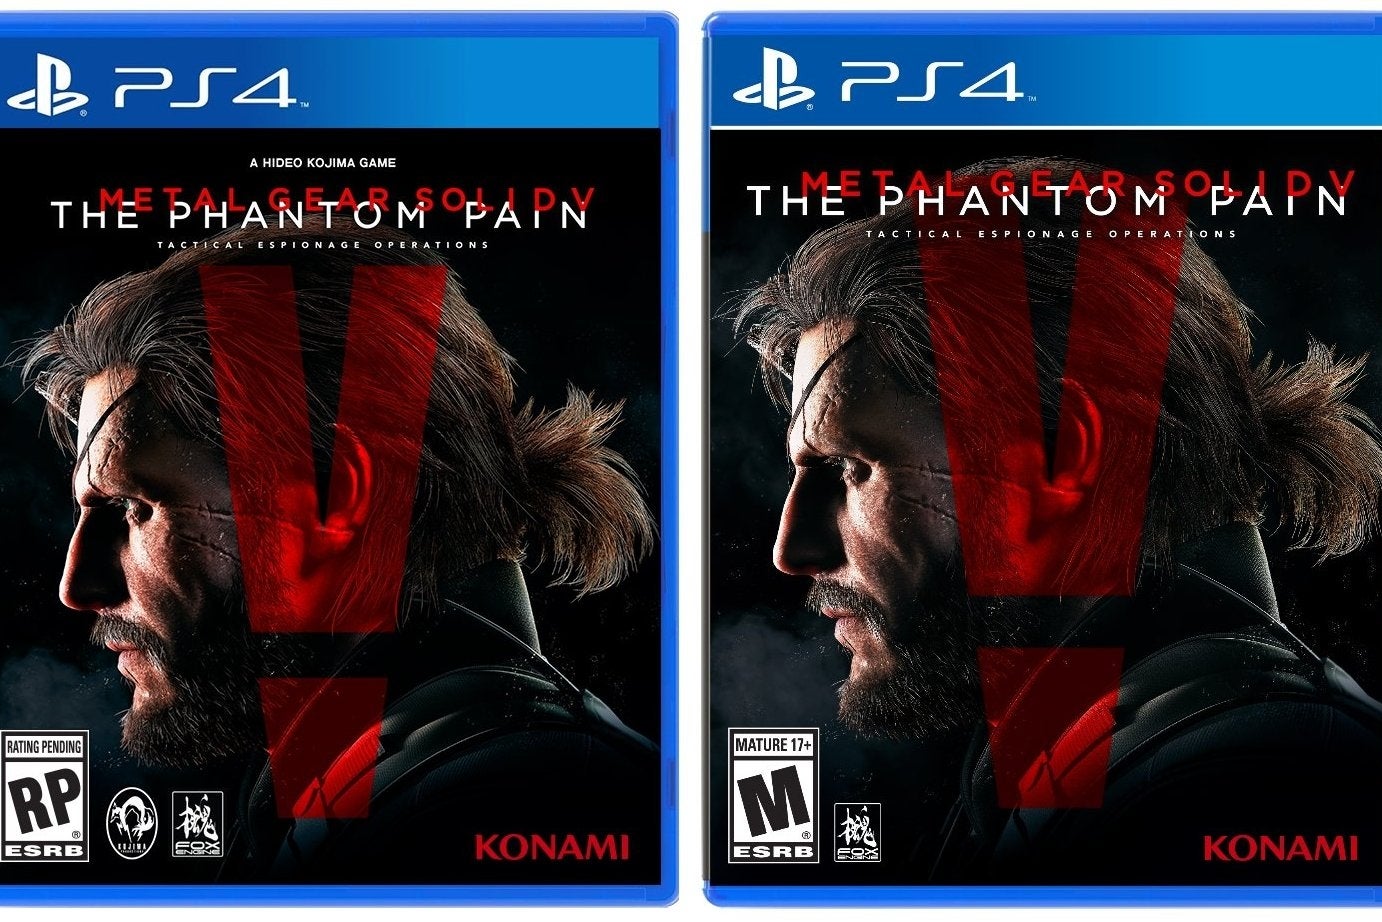 Imagen para Konami borra el nombre de Hideo Kojima de la portada de Metal Gear Solid 5: The Phantom Pain